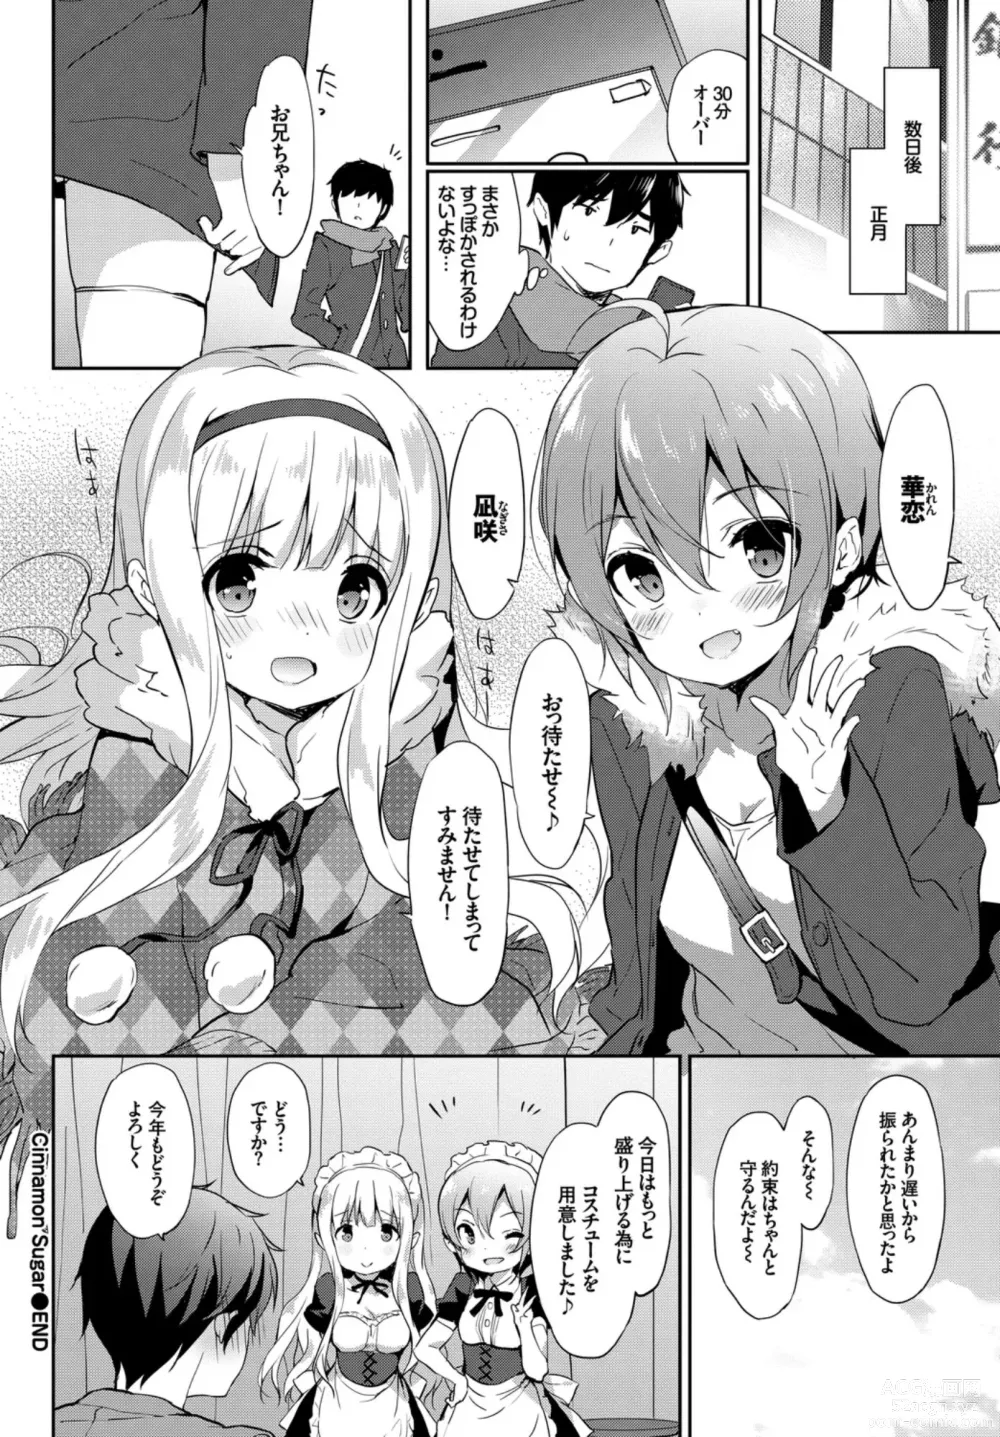 Page 86 of manga Oppai Sand de Shouten Shichao VOL. 2 ~Futago Hen~